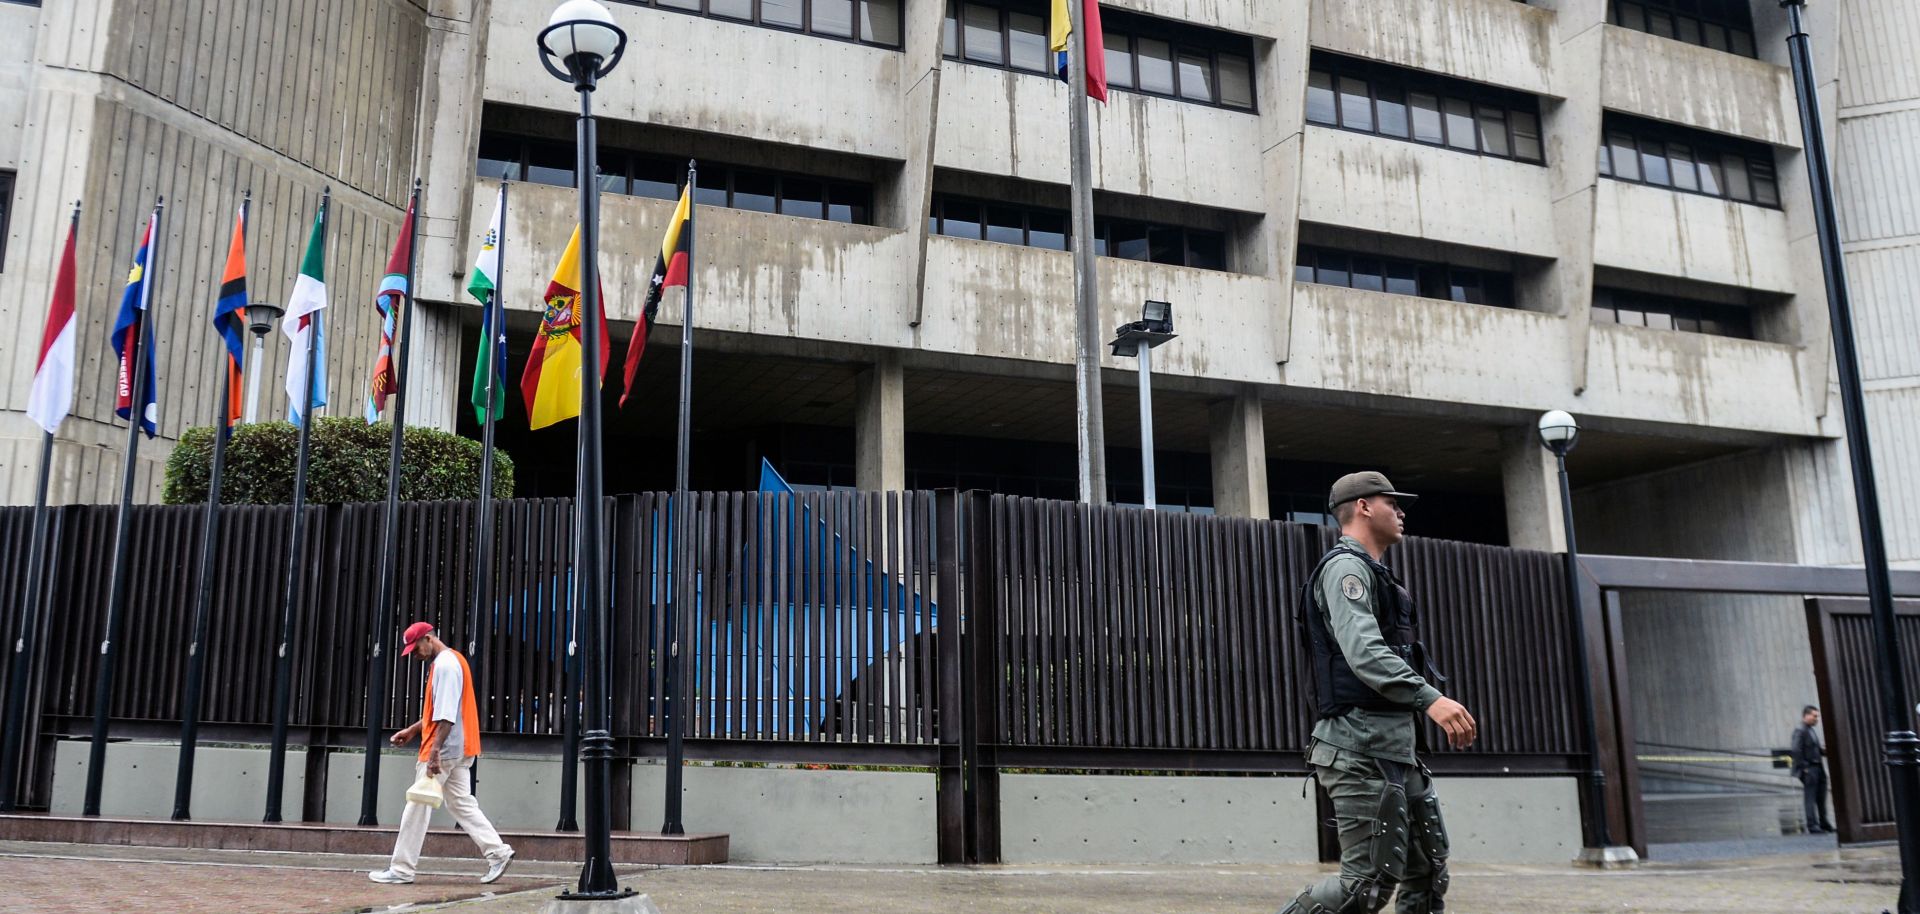 Venezuela Supreme Court grenade attack Caracas Nicolas Maduro unrest coup rumors